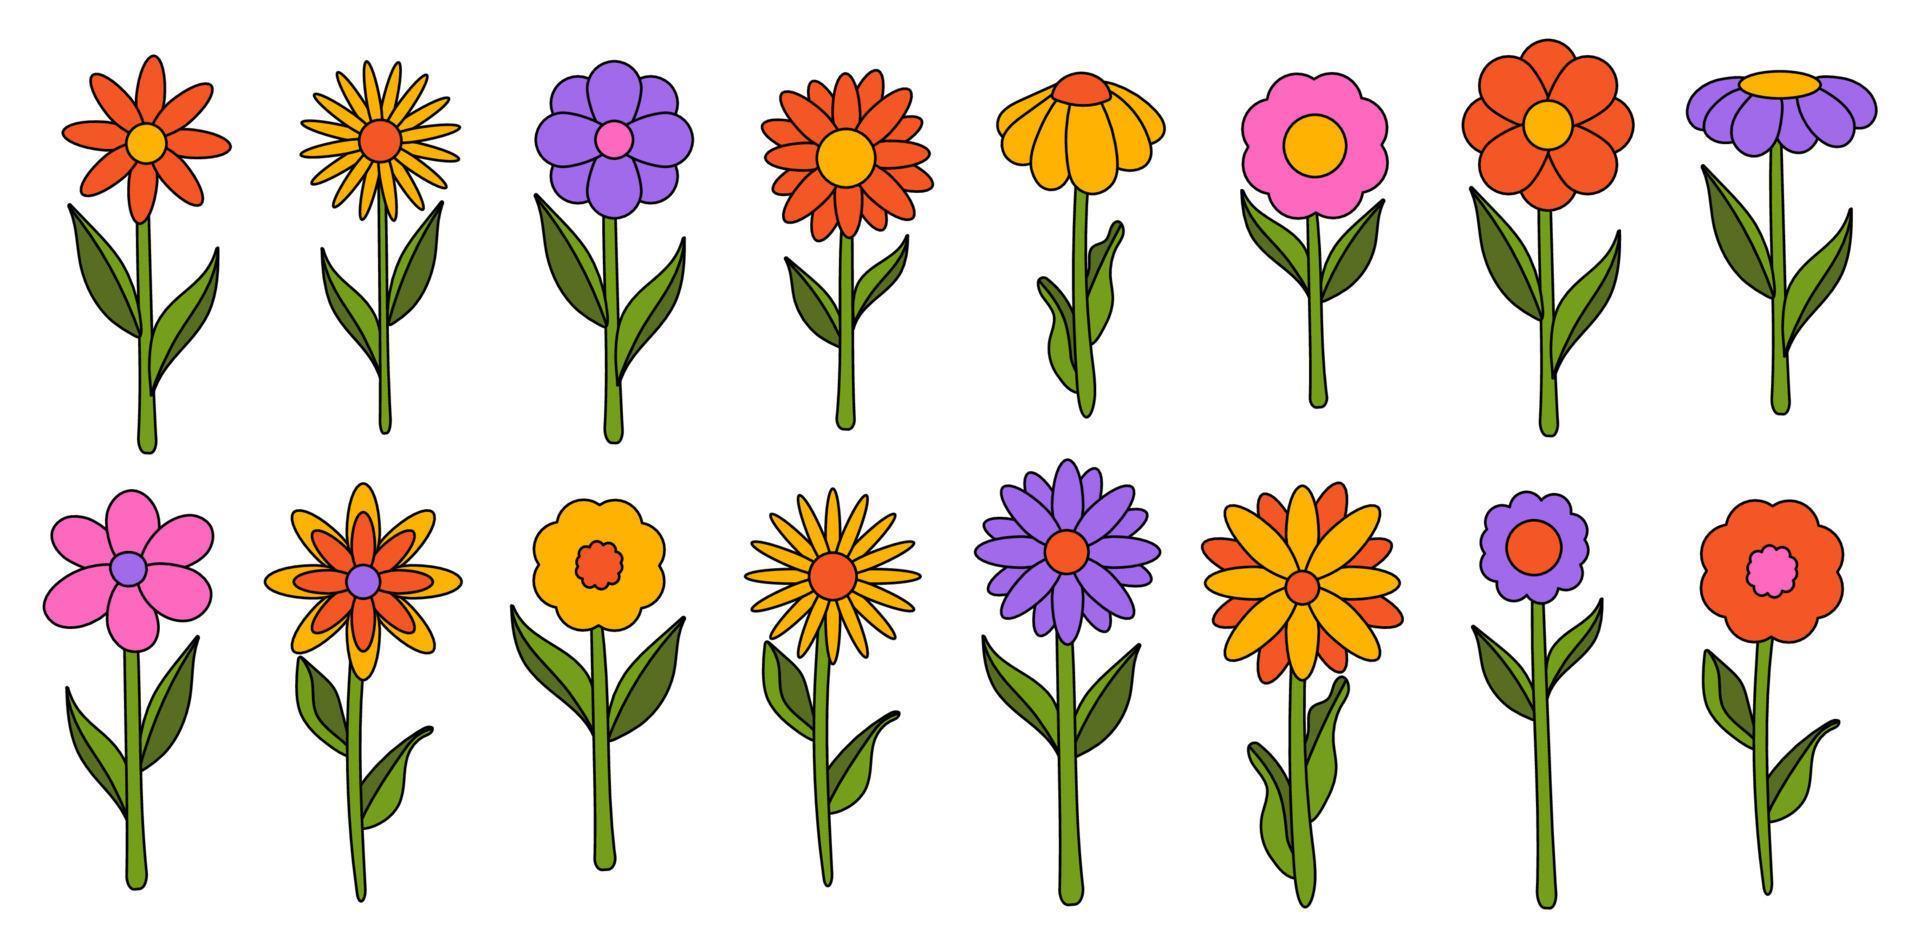 samling enkla blommande blommor i 1970-talets psykedeliska hippiestil. uppsättning grafiska klistermärken i retrodesign. groovy bakgrund. redigerbara stroke isolerade vektorillustration vektor